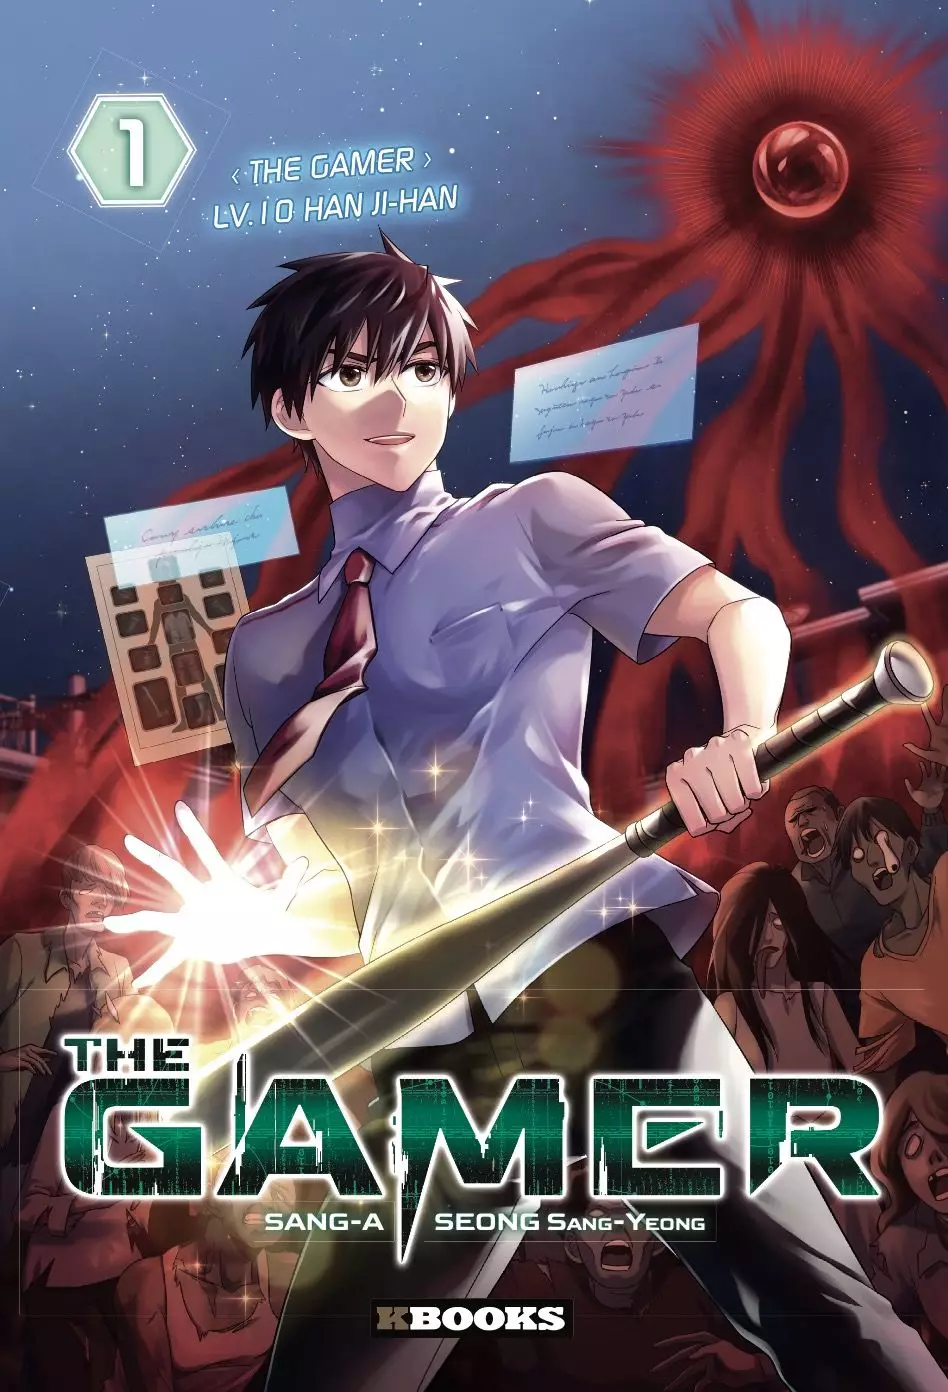 The gamer manga